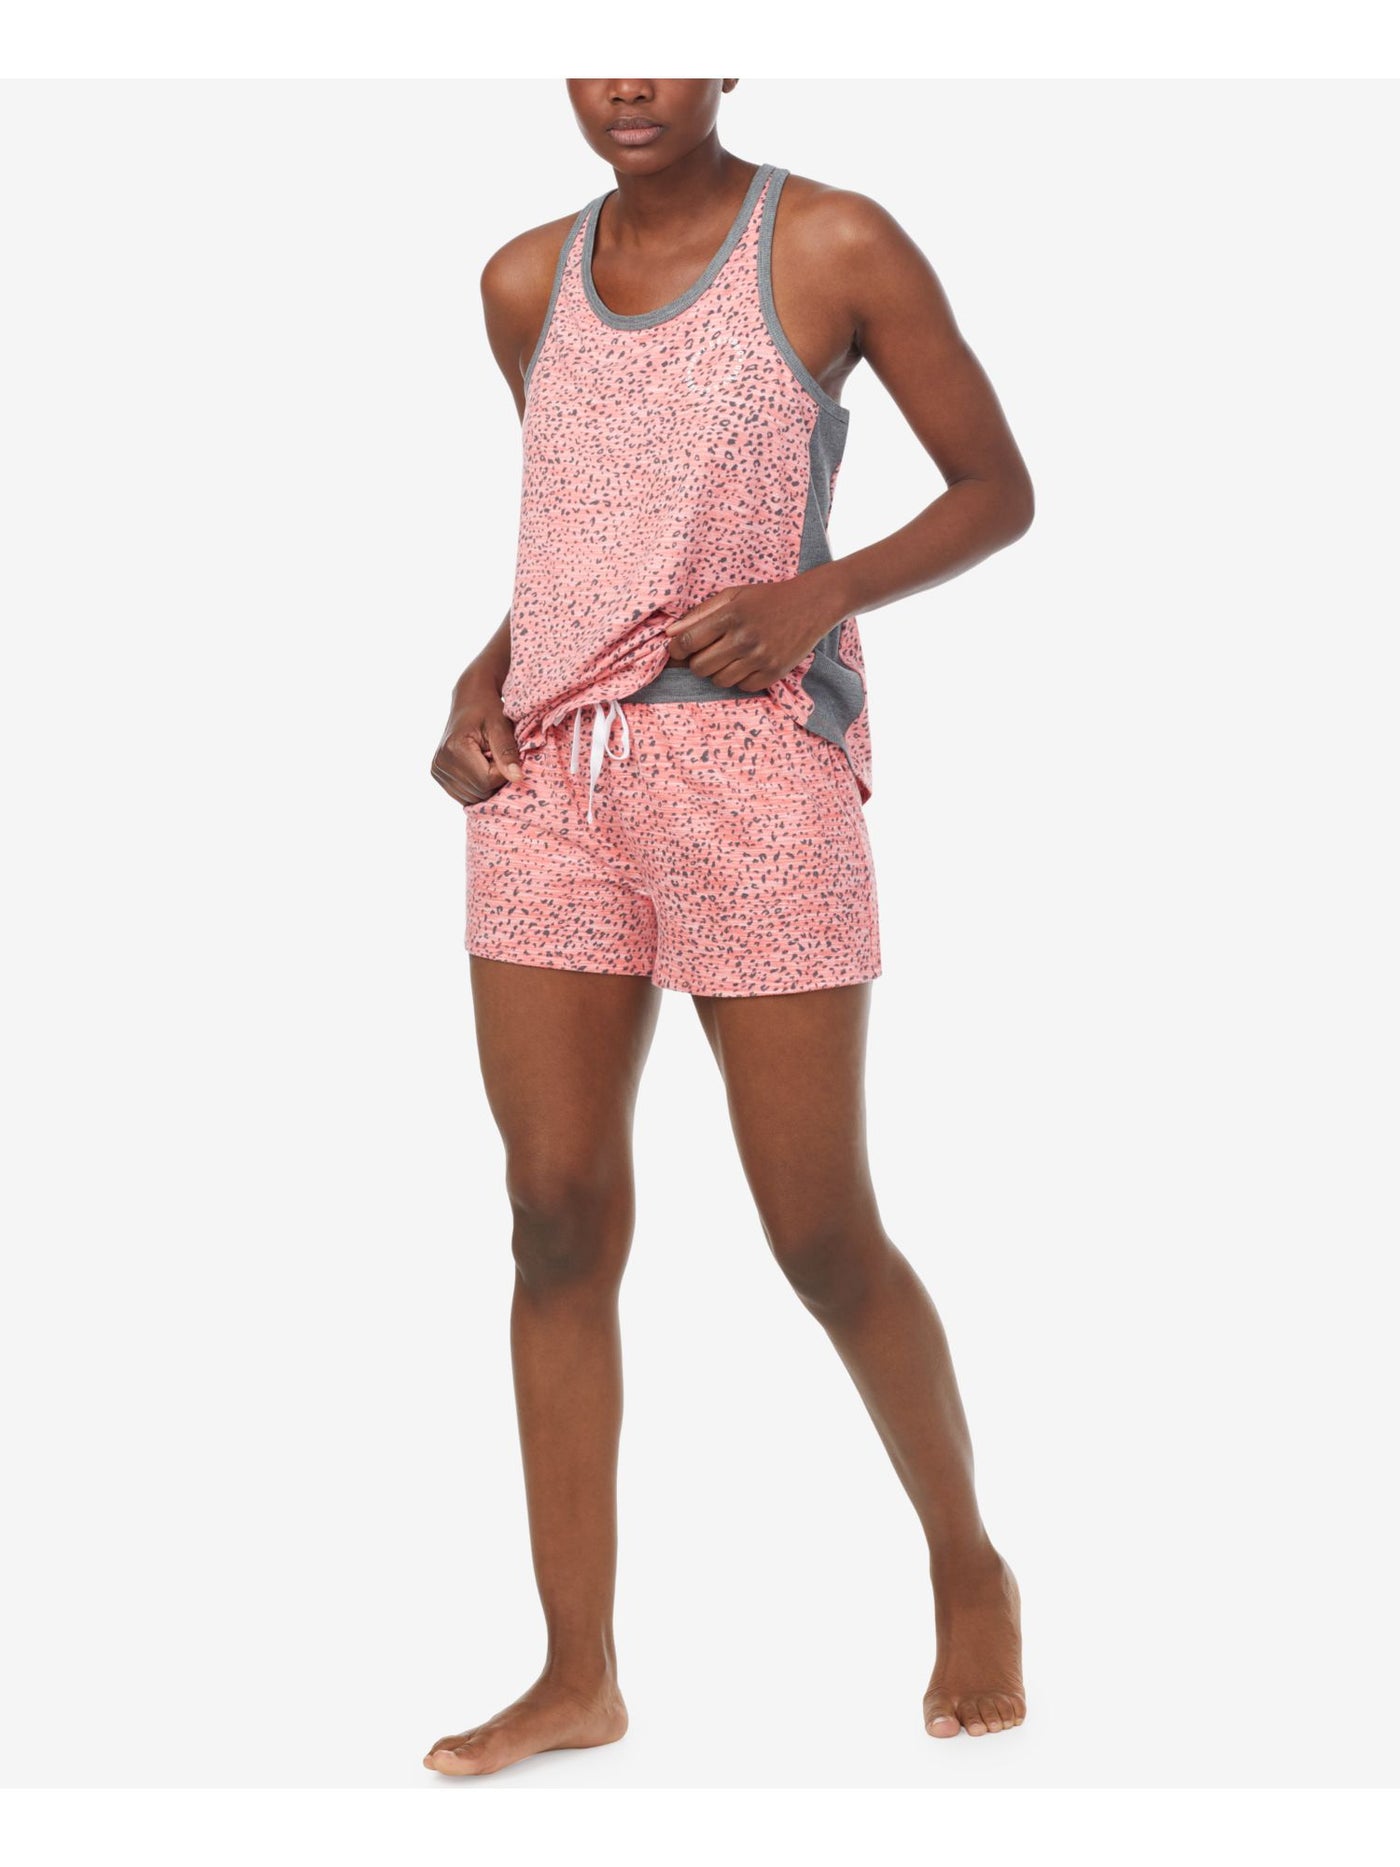 DKNY Womens Coral Logo Graphic Elastic Band Sleeveless Tank Top and Shorts Knit Pajamas XL